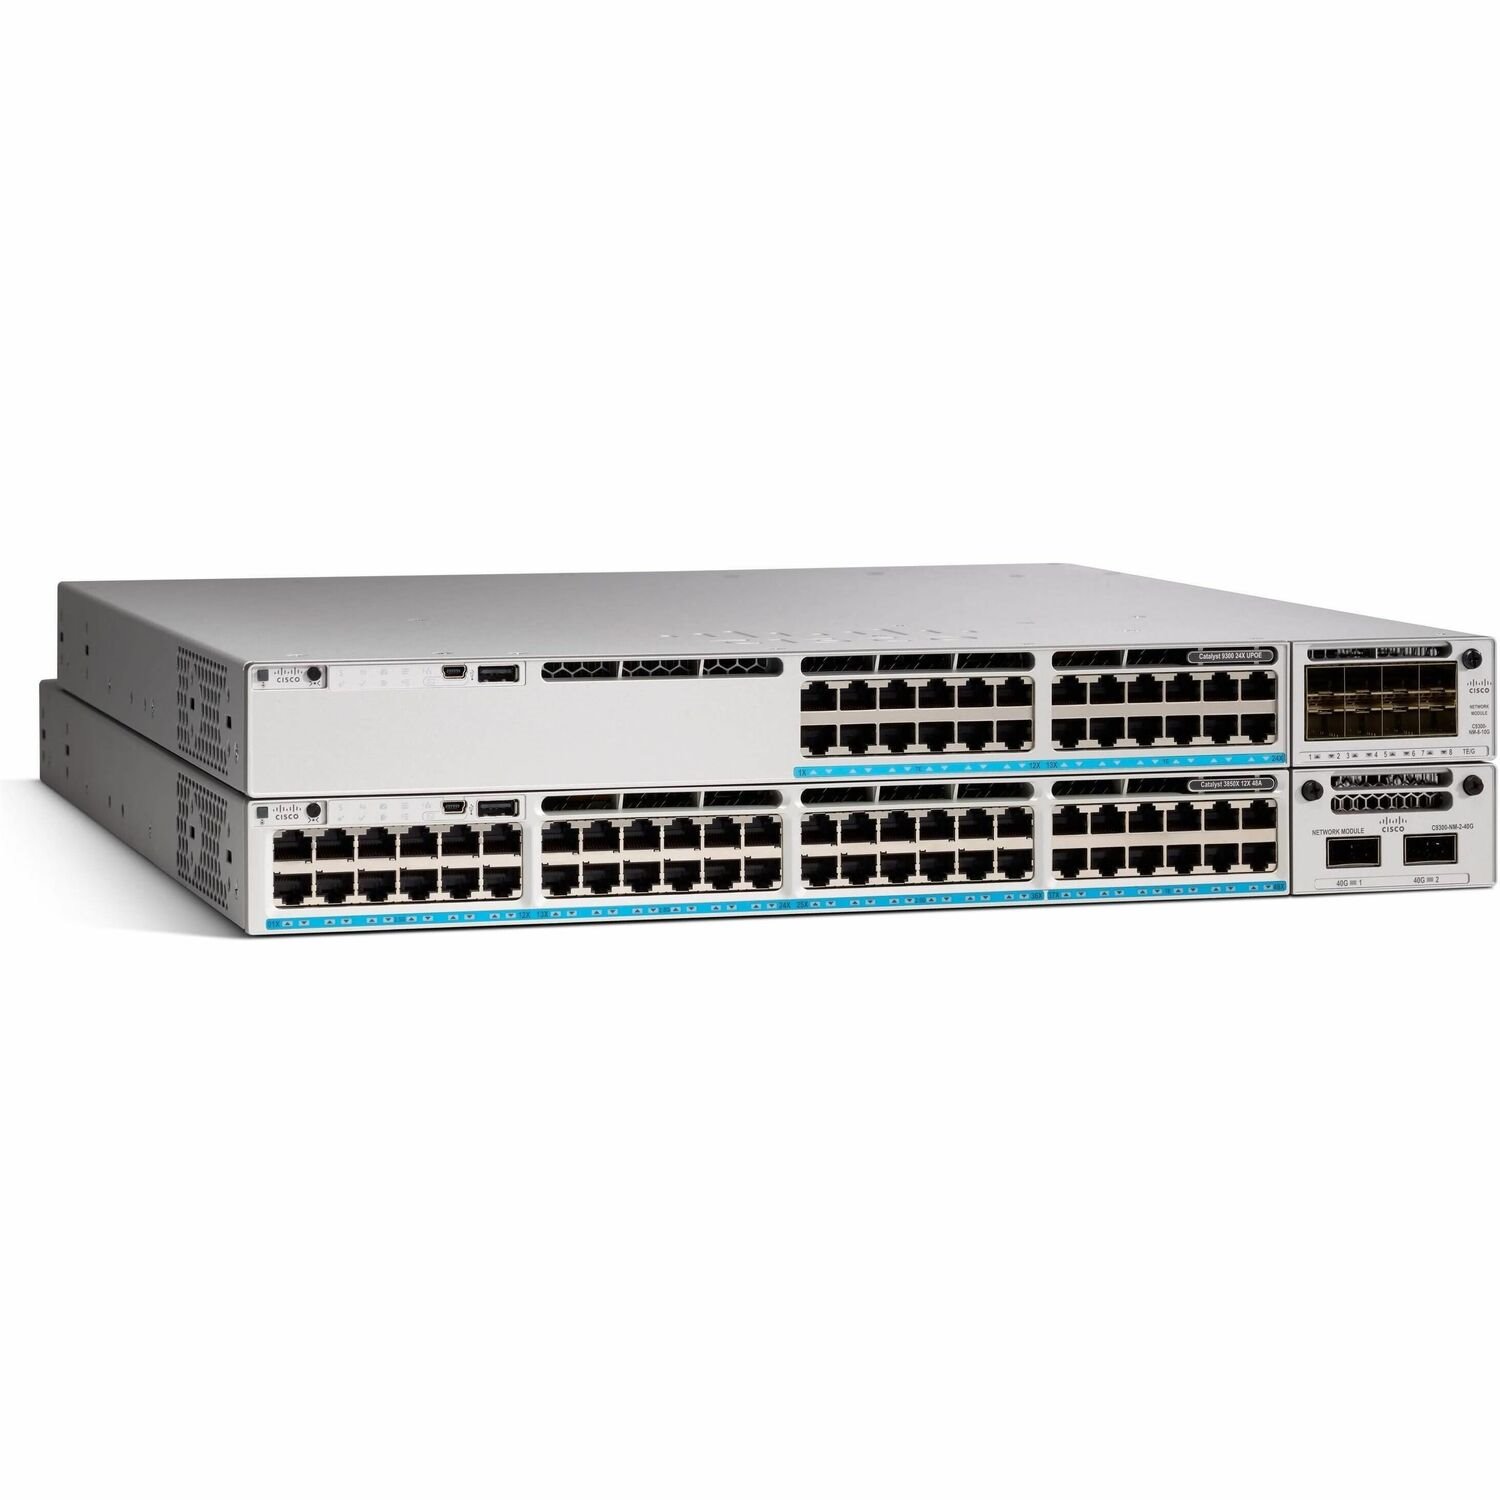 Cisco Catalyst 9300 48-Port 1G Copper With Fixed 4x10G/1G SFP+ Uplinks, Full PoE+, Meraki Advanced or Enterprise